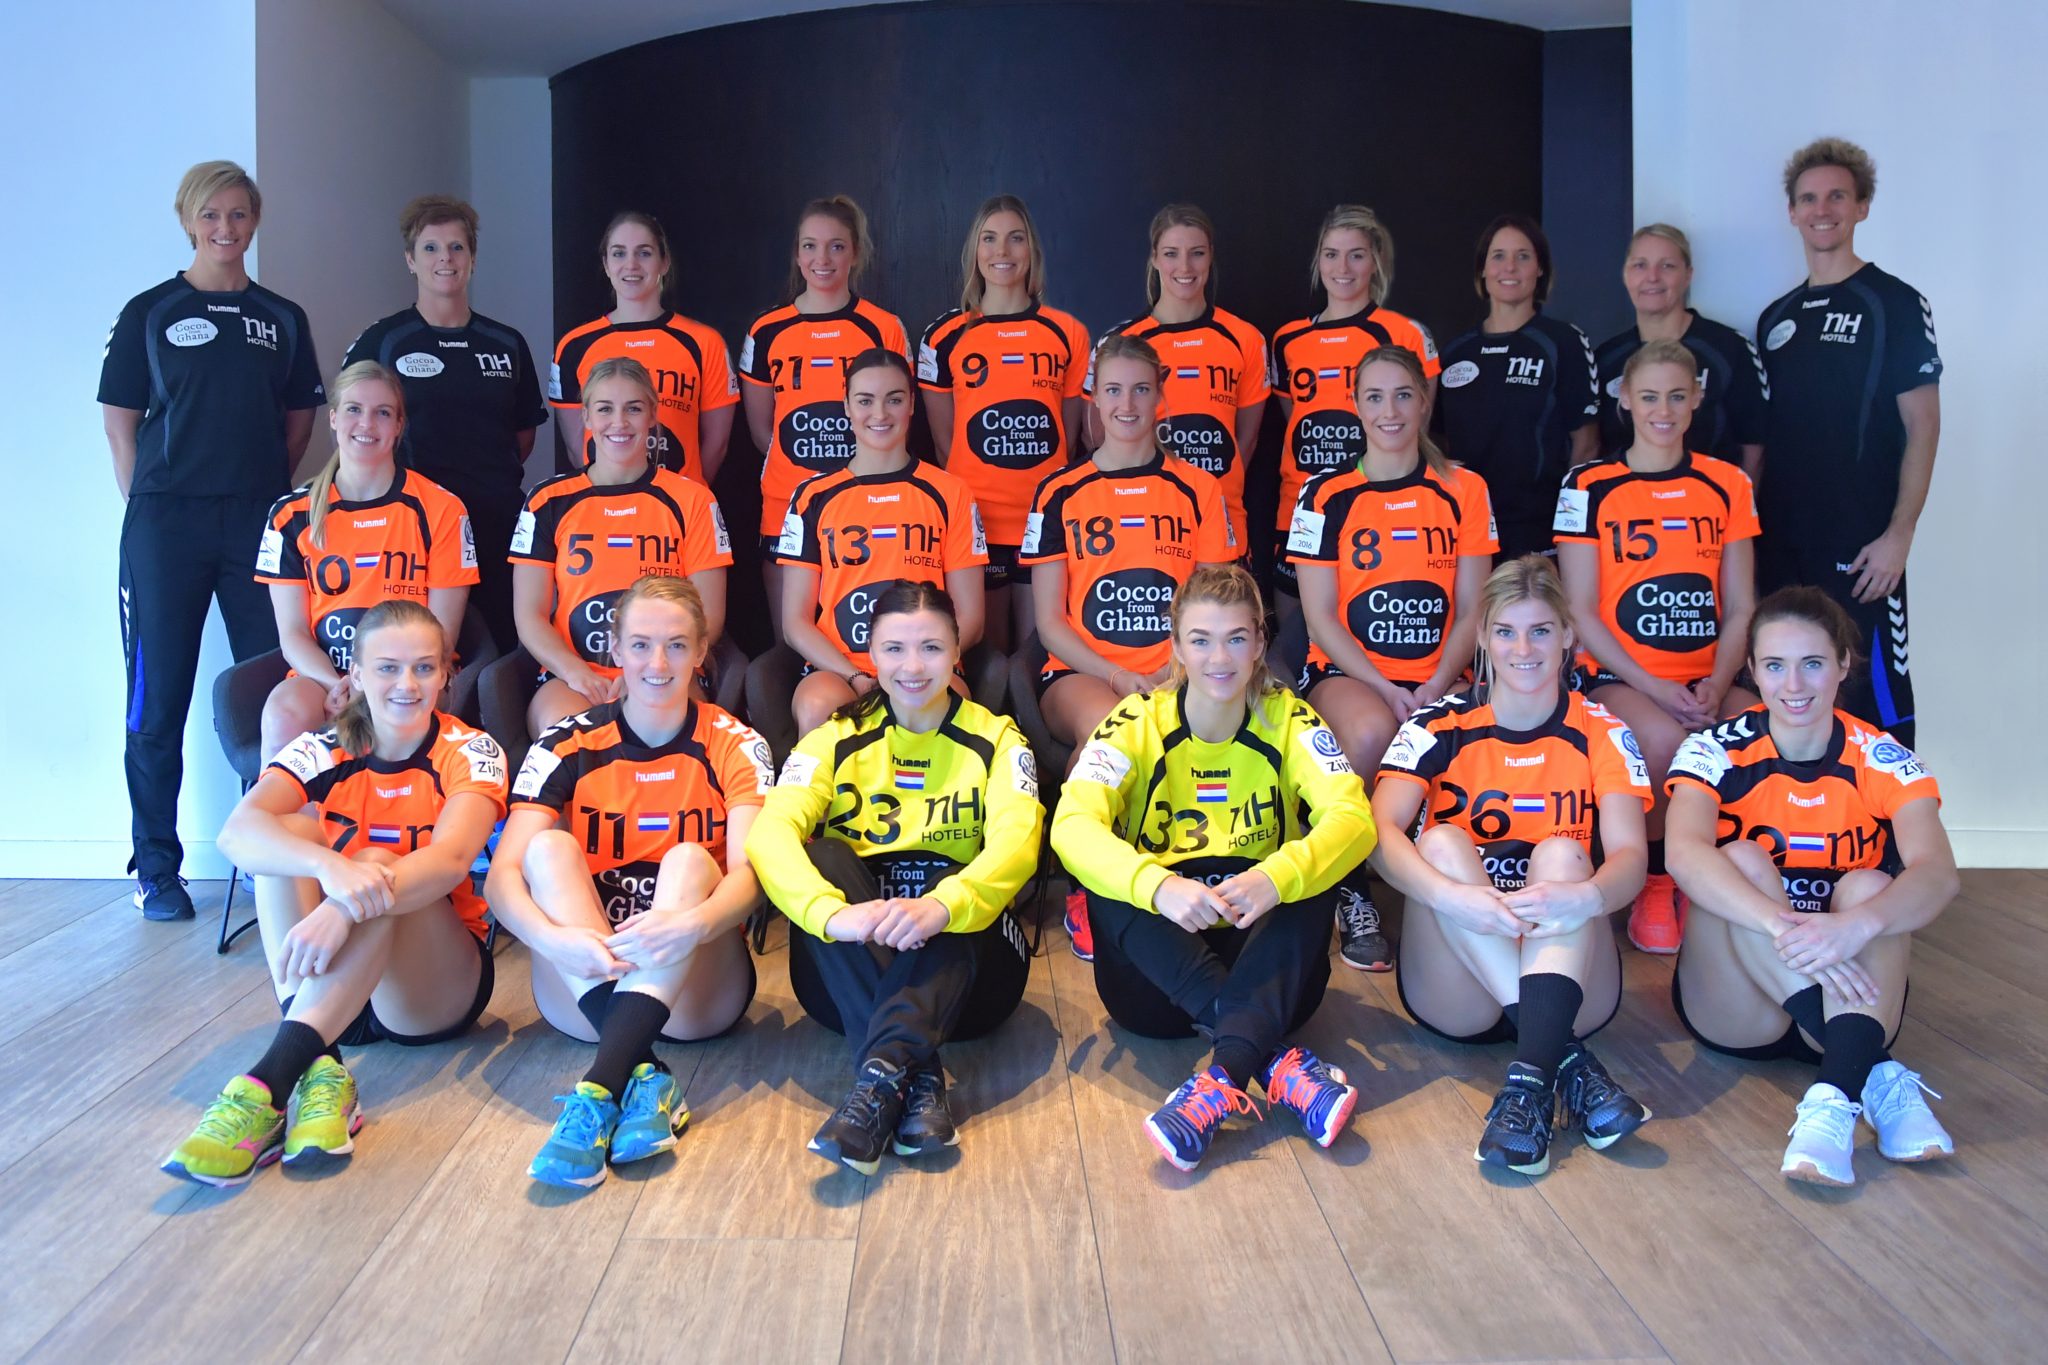 28-11-2016 HANDBAL:EK TEAM:PAPENDAL
Teamfoto En Portretten Voor Het EK 2016 In Zweden.


Foto: Henk Seppen